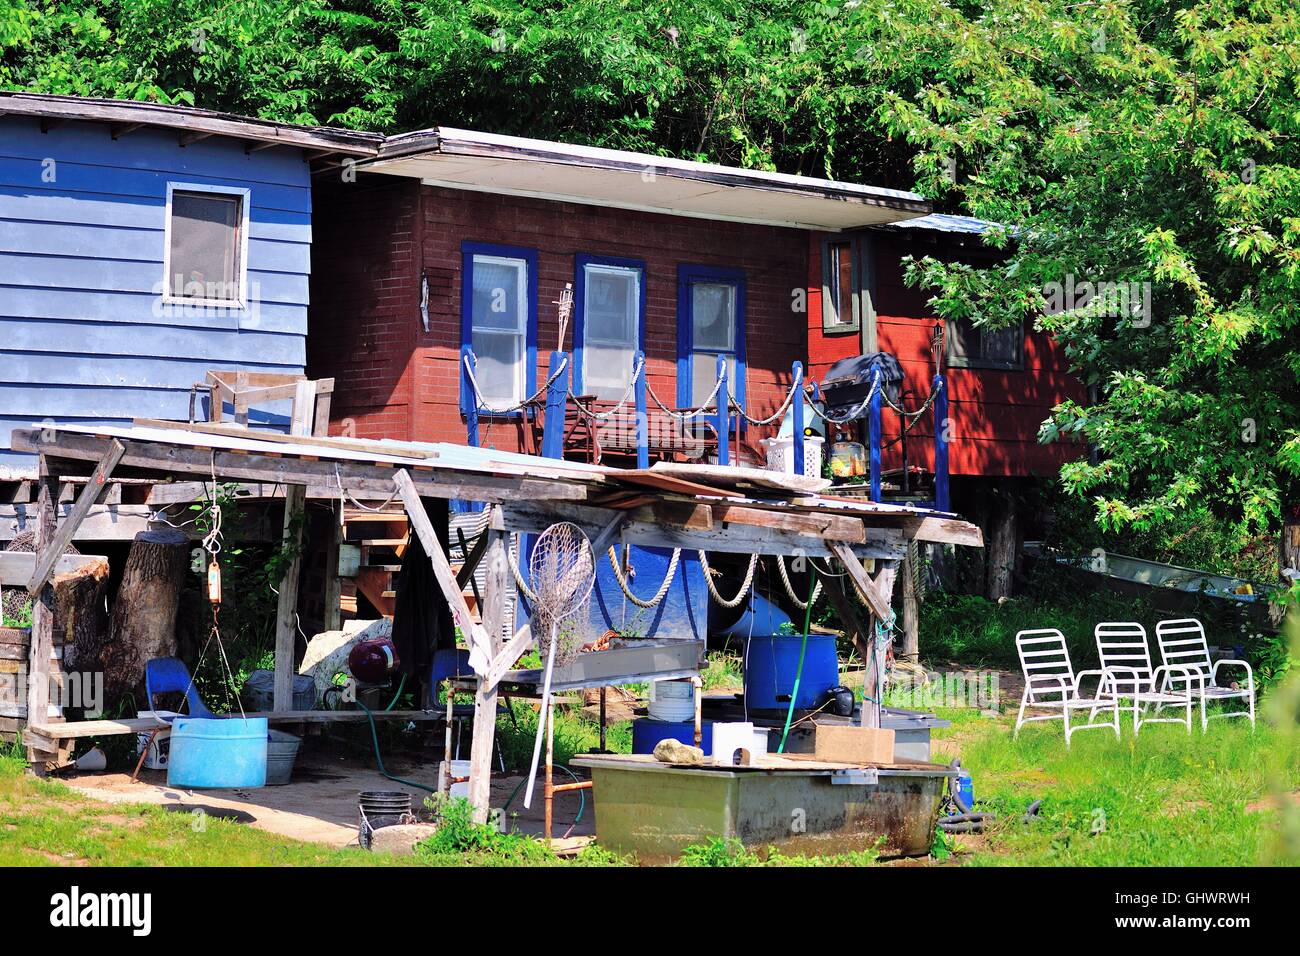 Sedie allineate per fornire una vista e reti da pesca appesa al rifugio protetto a queste case siedono lungo il fiume Mississippi. Gutenberg, Iowa, USA. Foto Stock